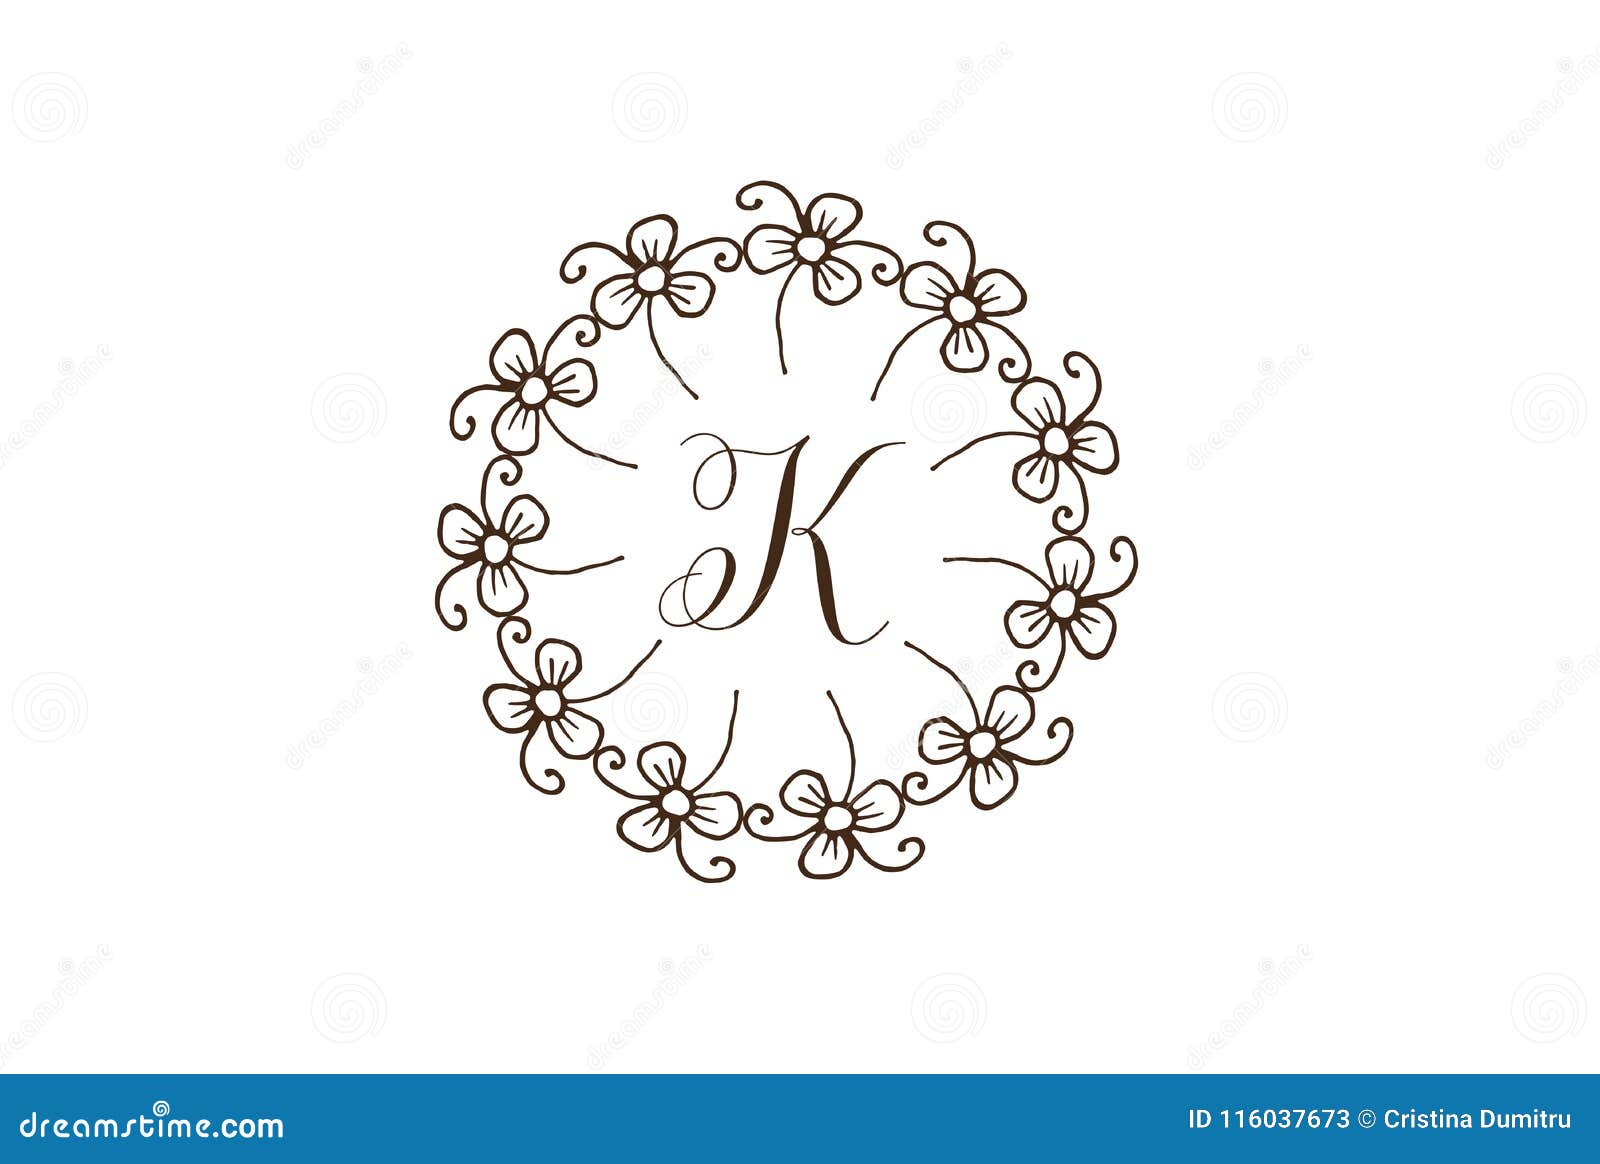 Elegant Floral Circle Vintage Style Letter K Logo Design. Stock ...